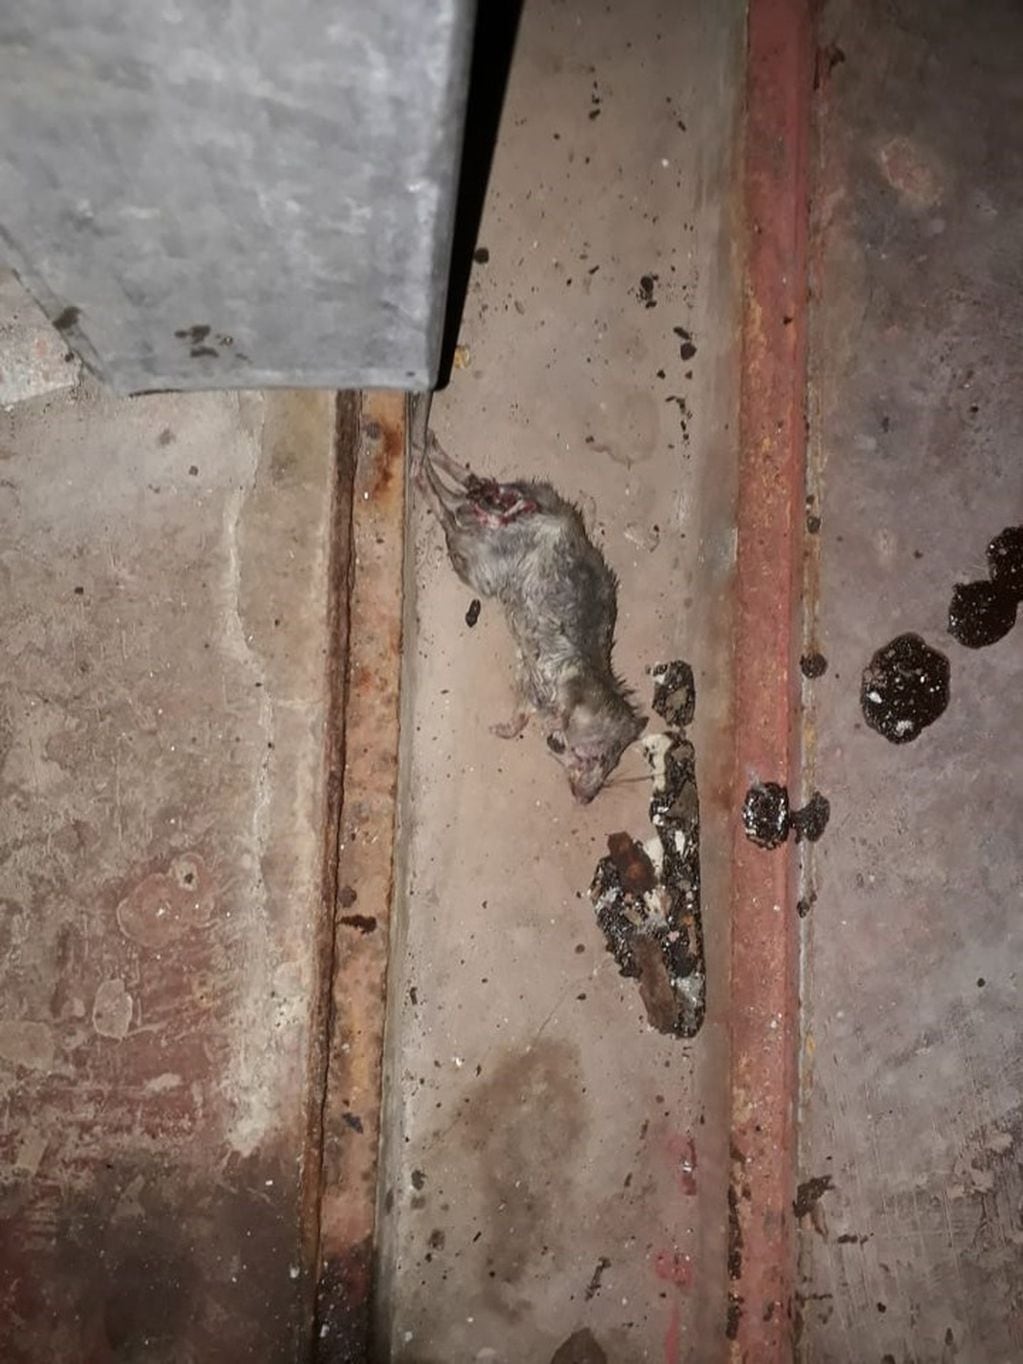 Carne podrida, ratas e insectos en un frigorífico en el barrio porteño de Flores. (Clarín)